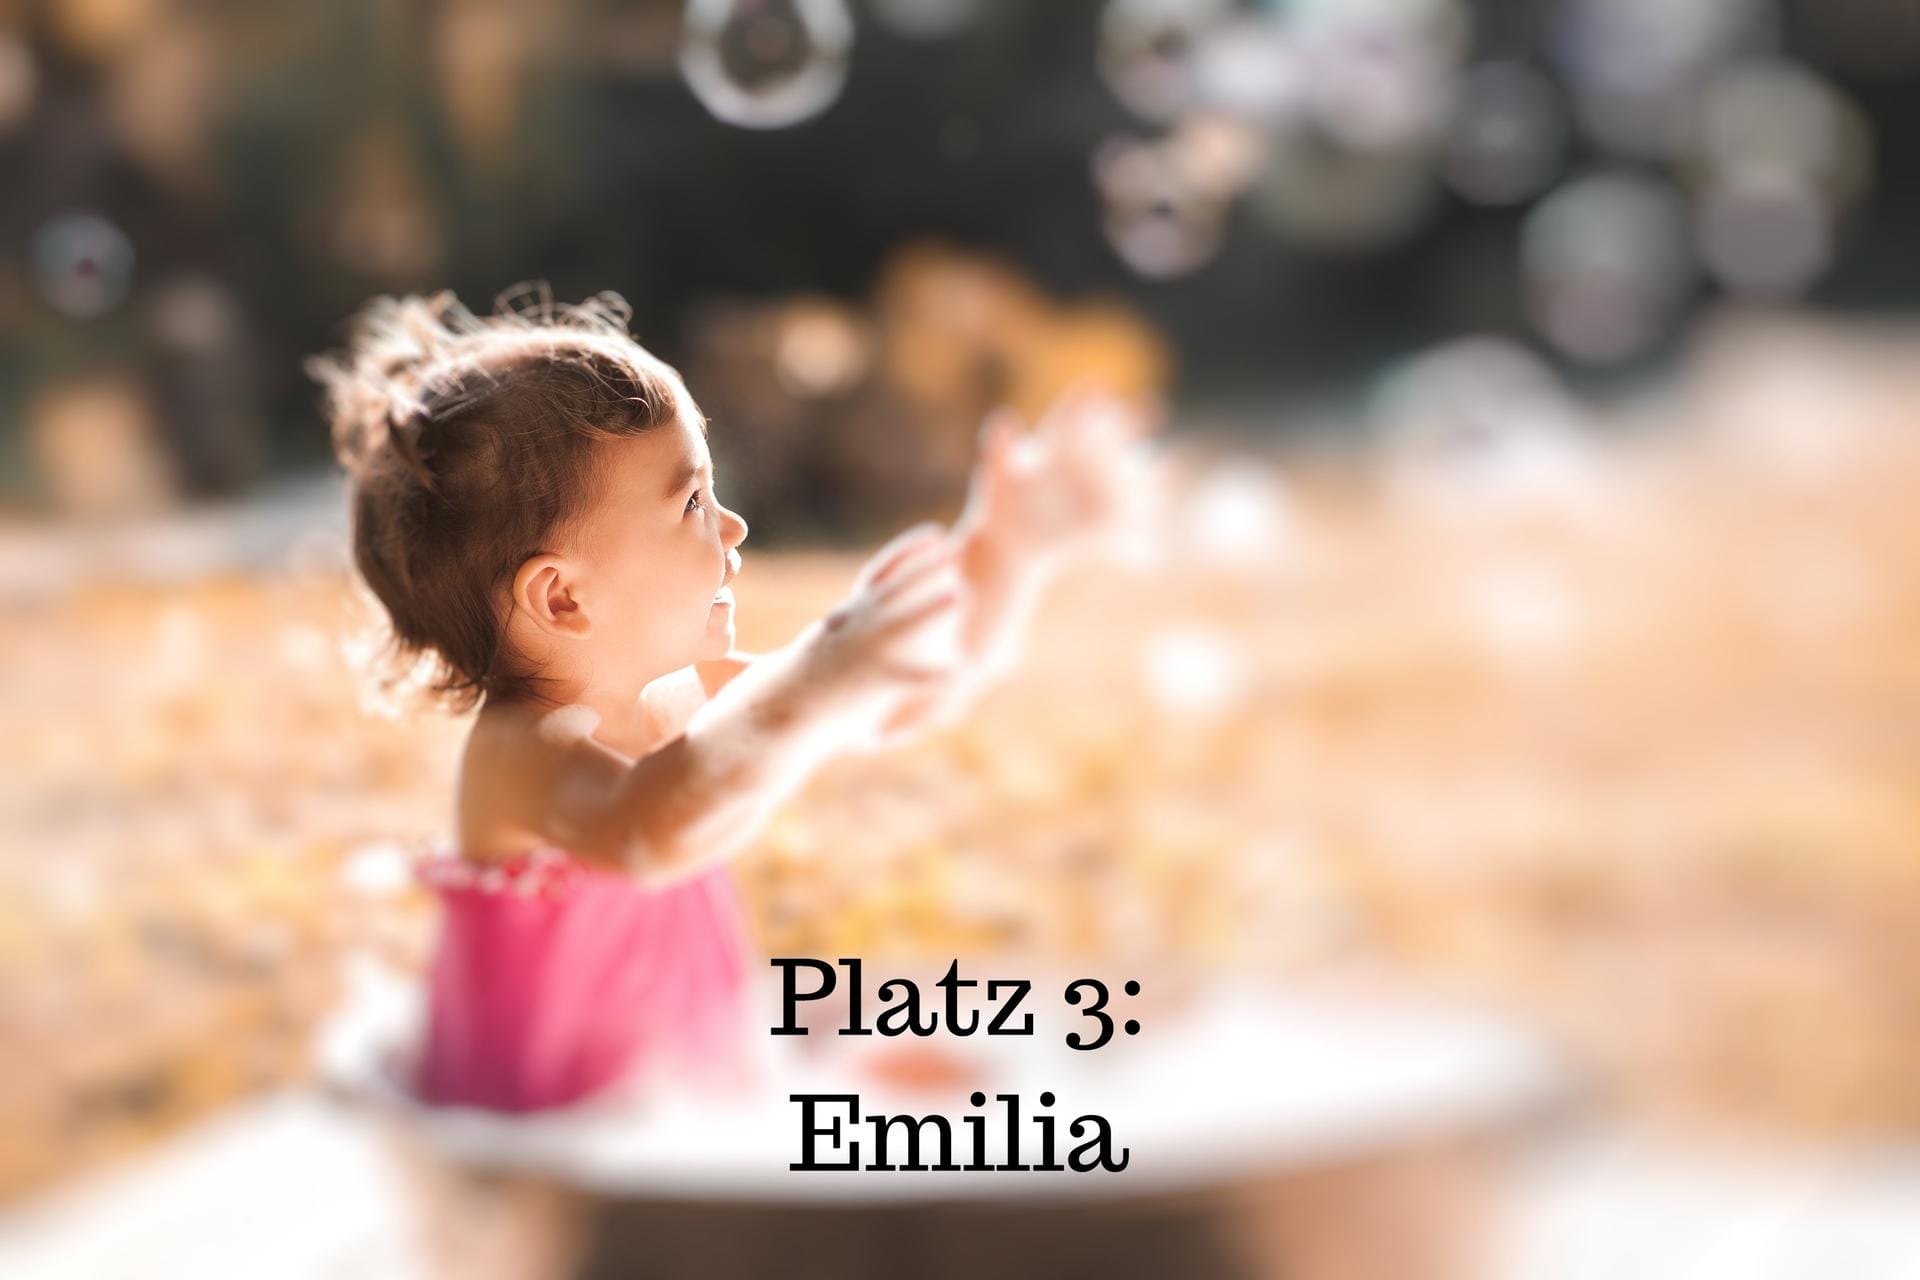 Platz 3: Emilia – Der Name ist italienisch und geht auf das lateinische Wort "aemulus" zurück, das "nacheifern" bedeutet. Emilia bedeutet also "die Fleißige".